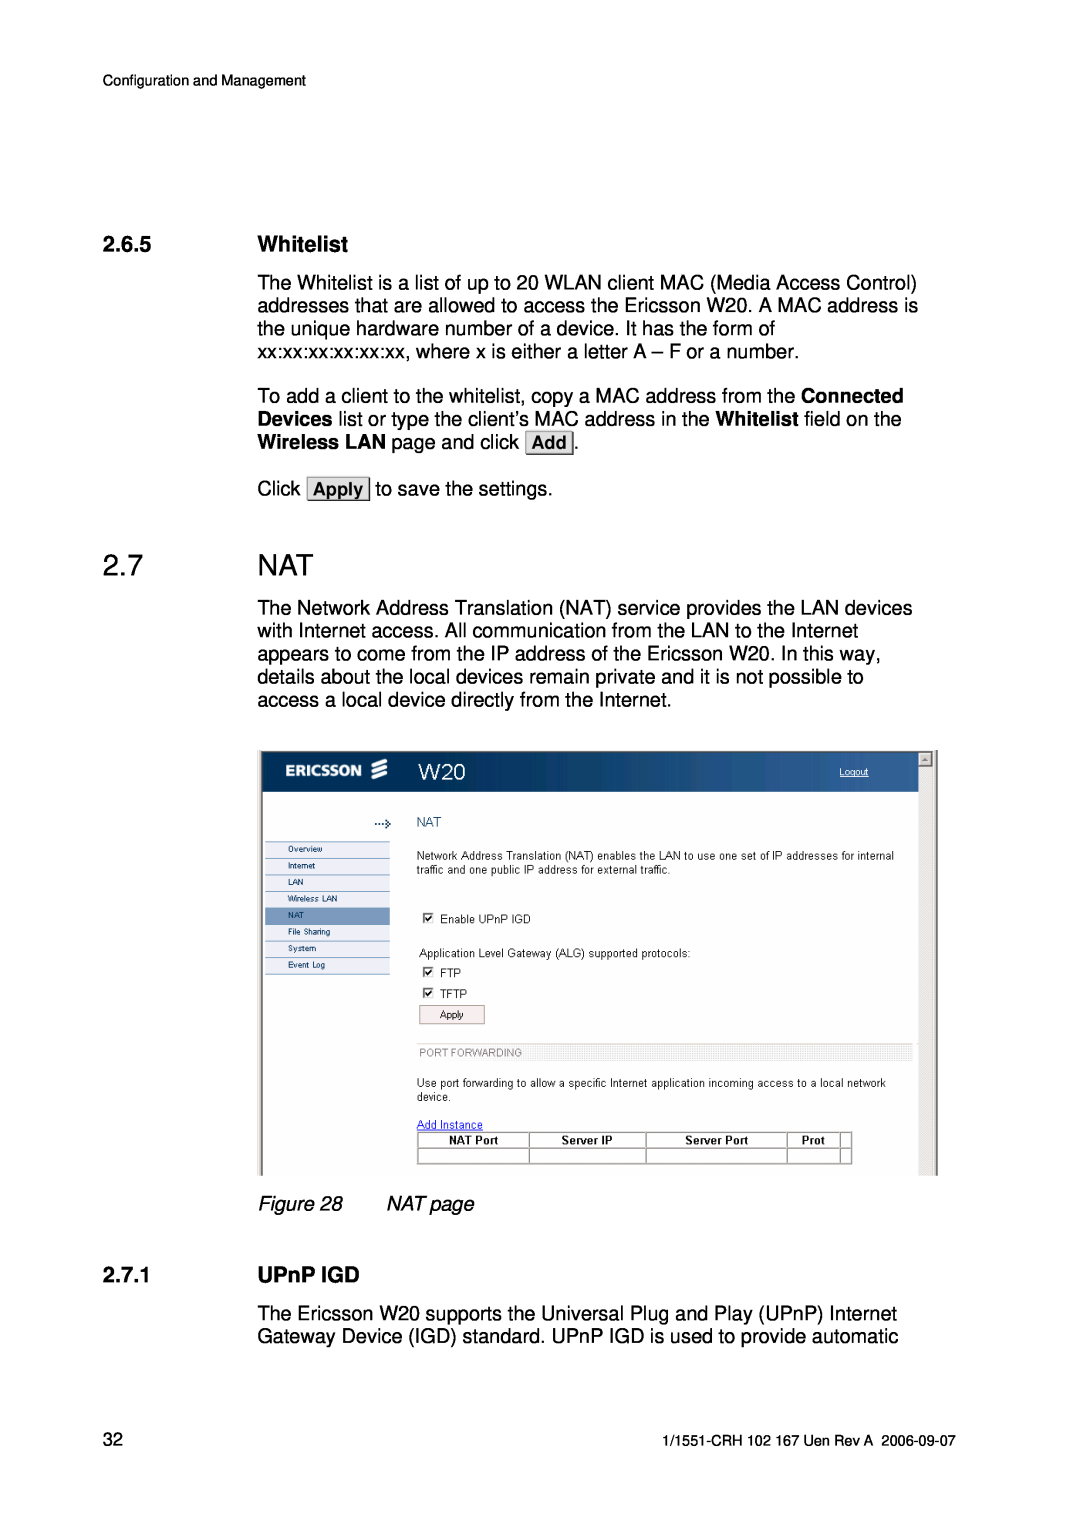 Ericsson W20 manual 2.7 NAT, Whitelist, UPnP IGD 